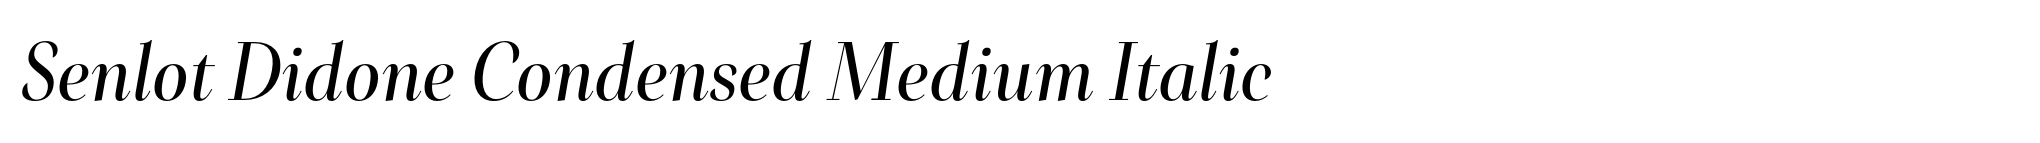 Senlot Didone Condensed Medium Italic image